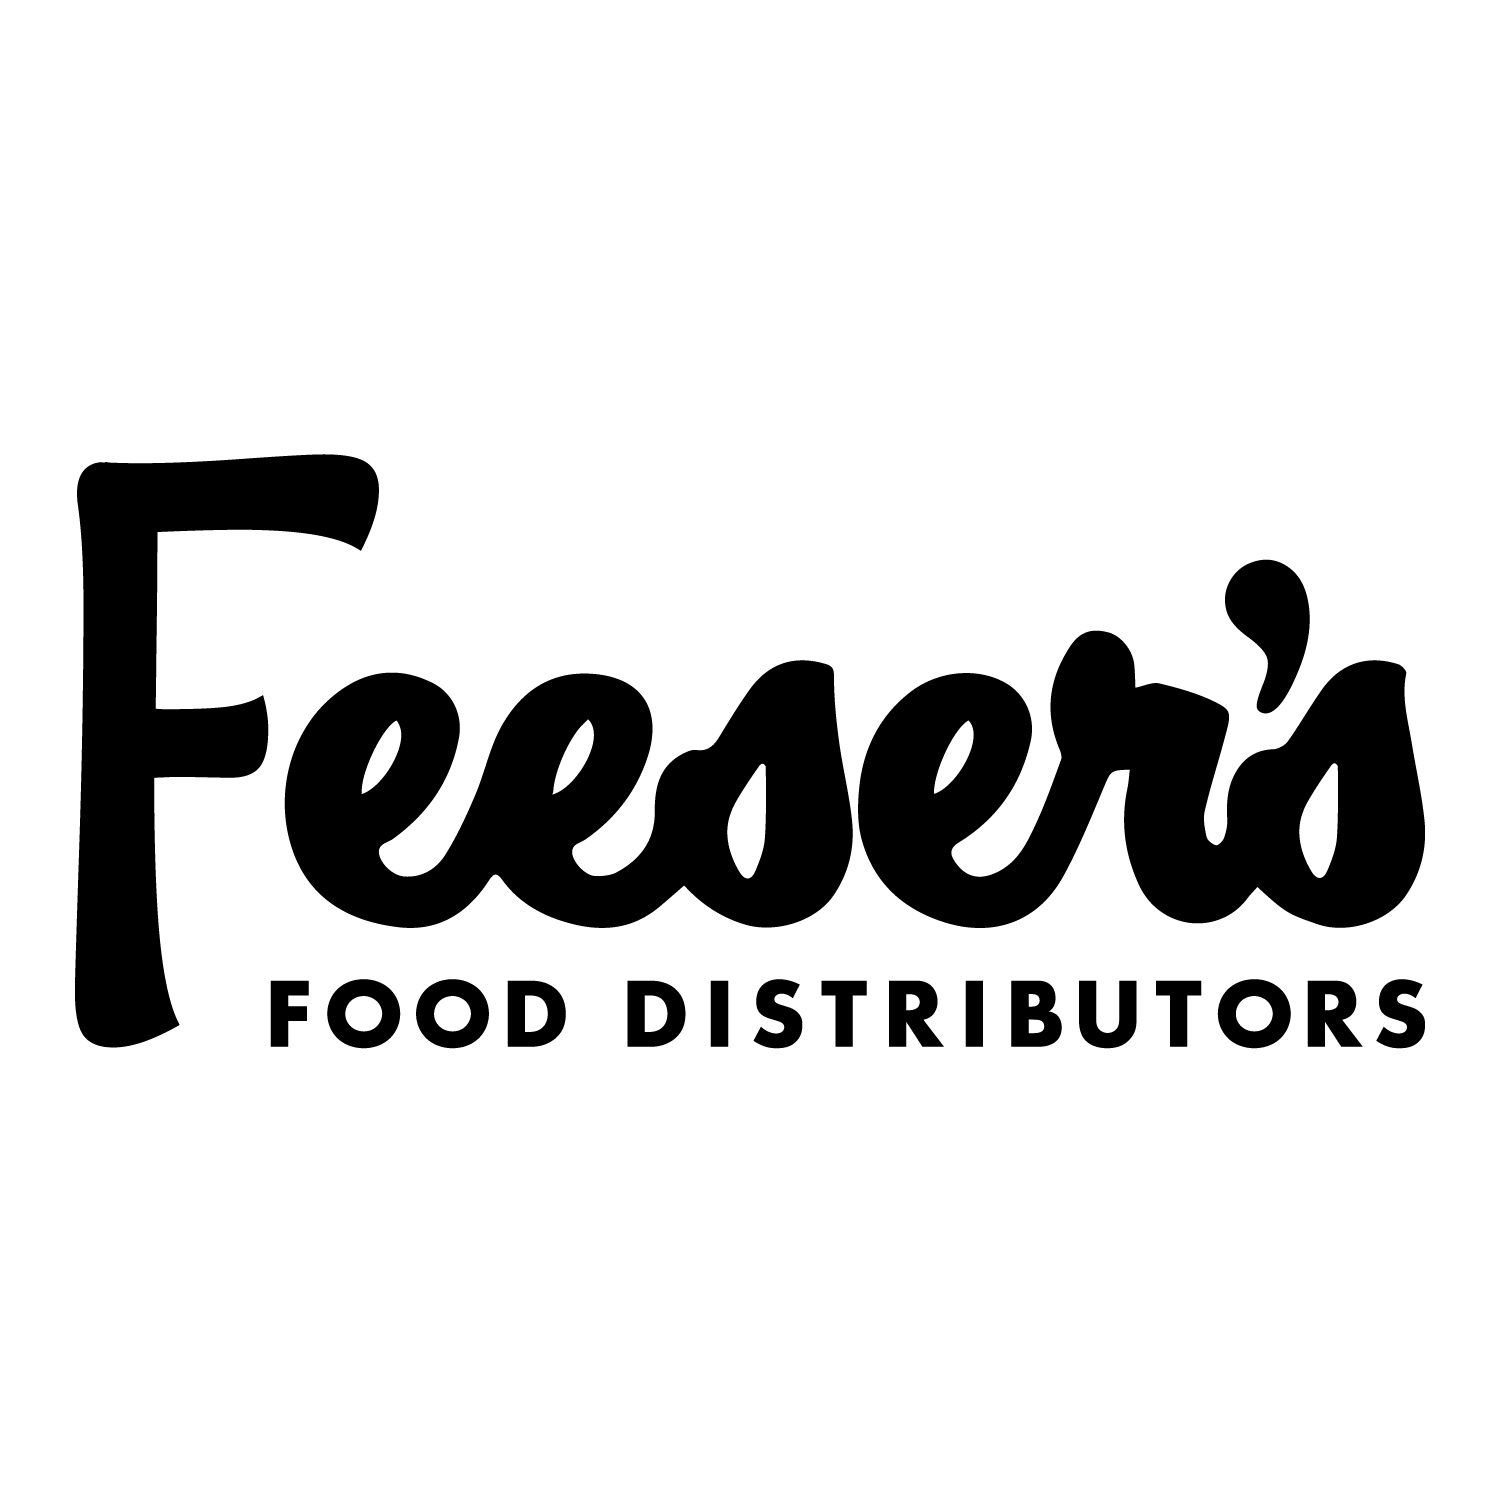 Feesers logo